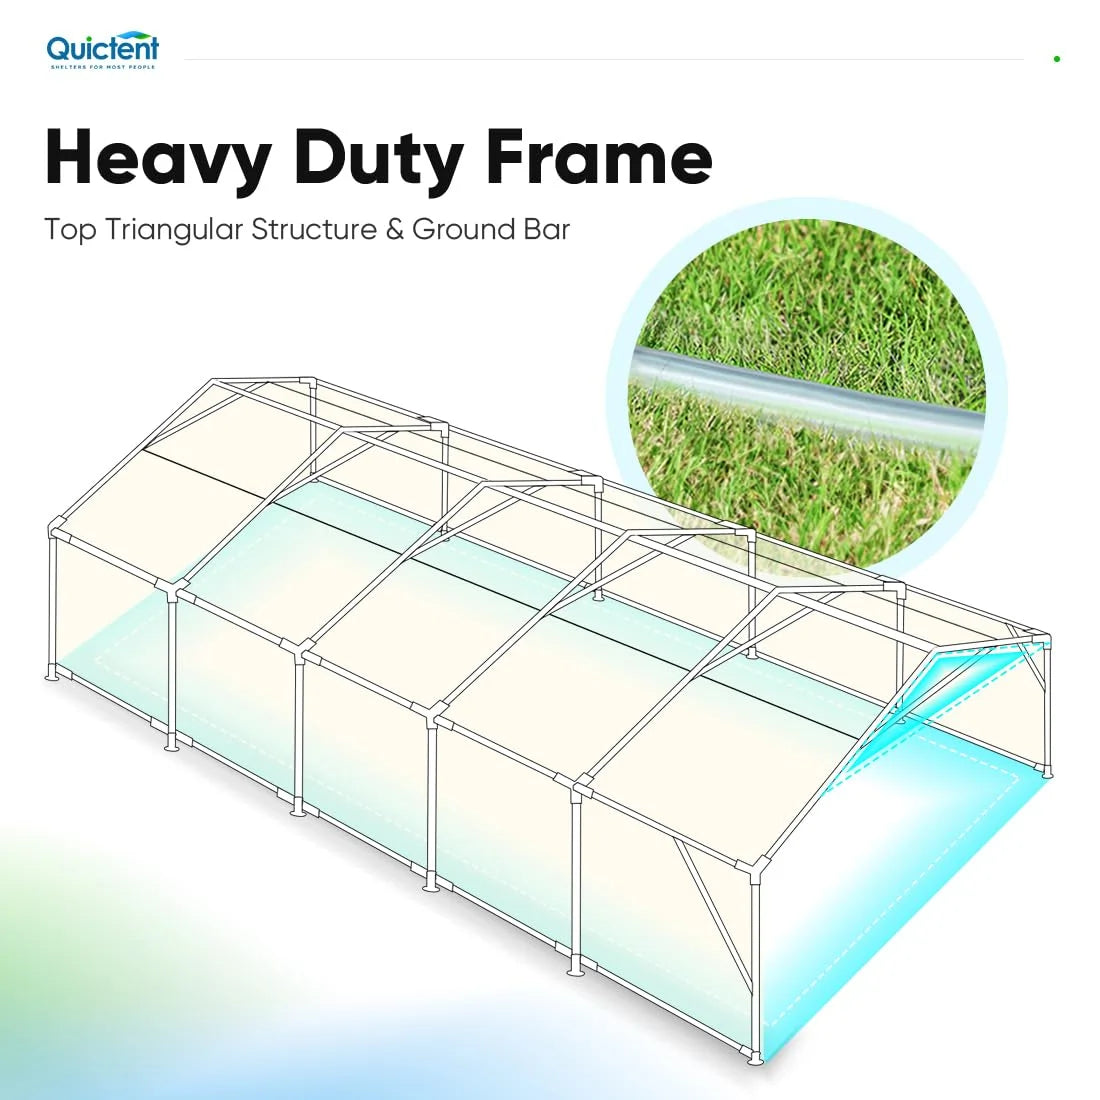 Heavy-duty frame#size_20' x 32'